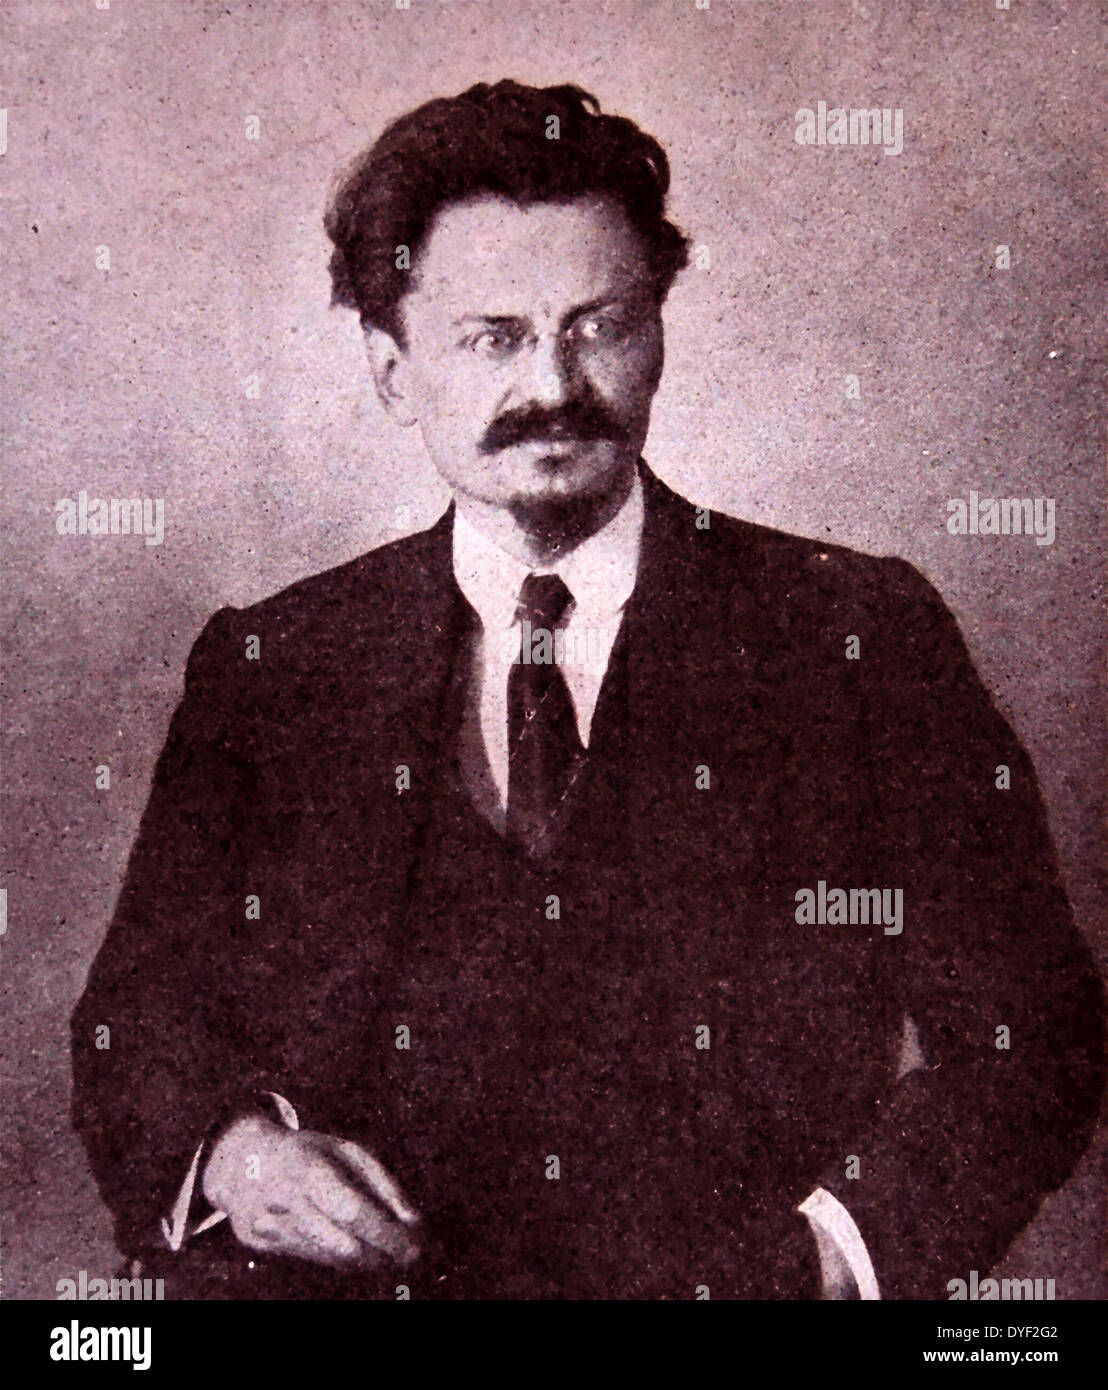 Leon Trotsky (nato Lev Davidovic Bronstein) 1879 - 21 agosto 1940) Russo rivoluzionario marxista e teorico, uomo politico sovietico e il fondatore e primo leader dell'Esercito Rosso. Foto Stock